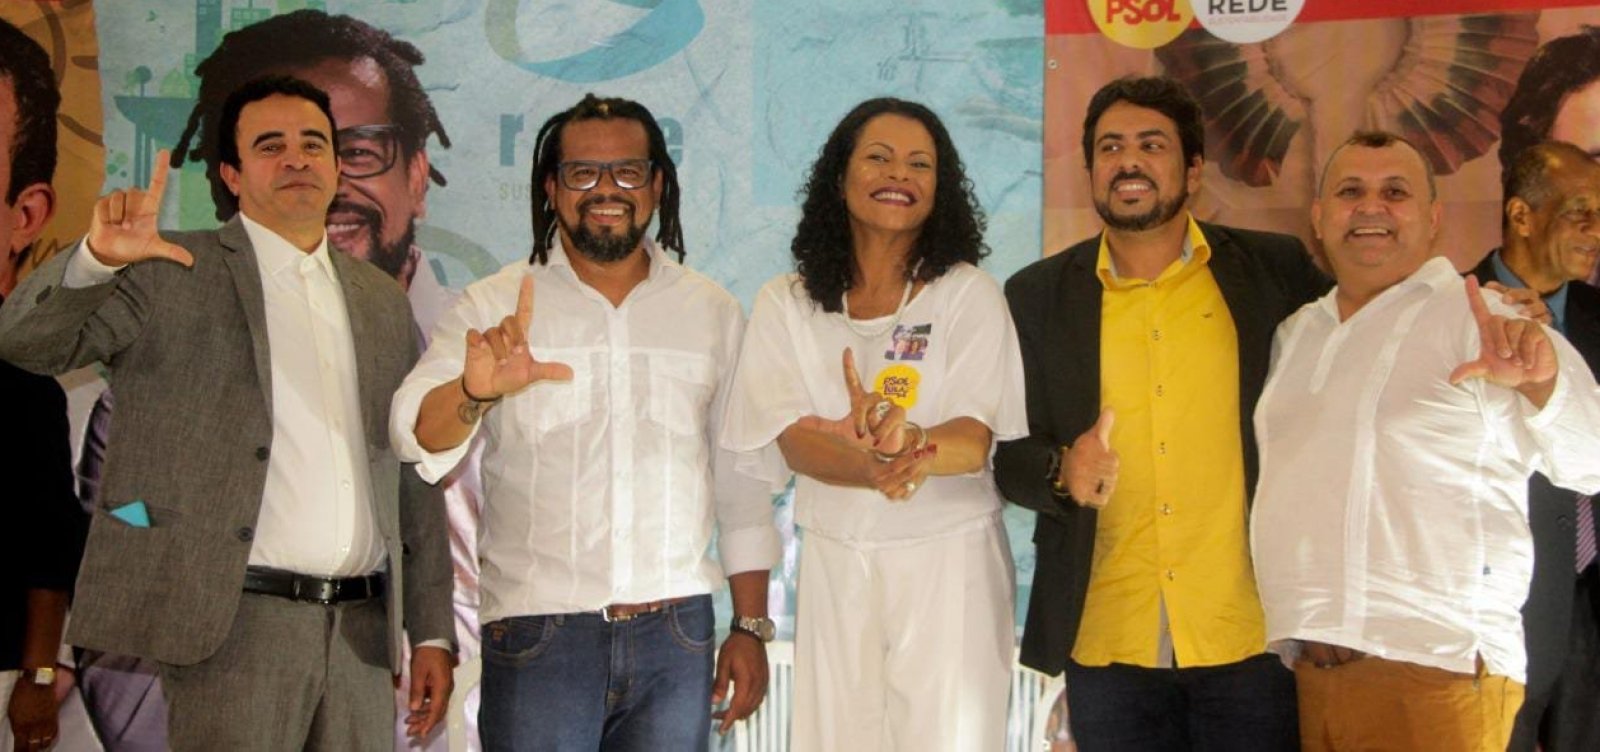 Kleber Rosa é lançado oficialmente candidato ao governo da Bahia pelo Psol